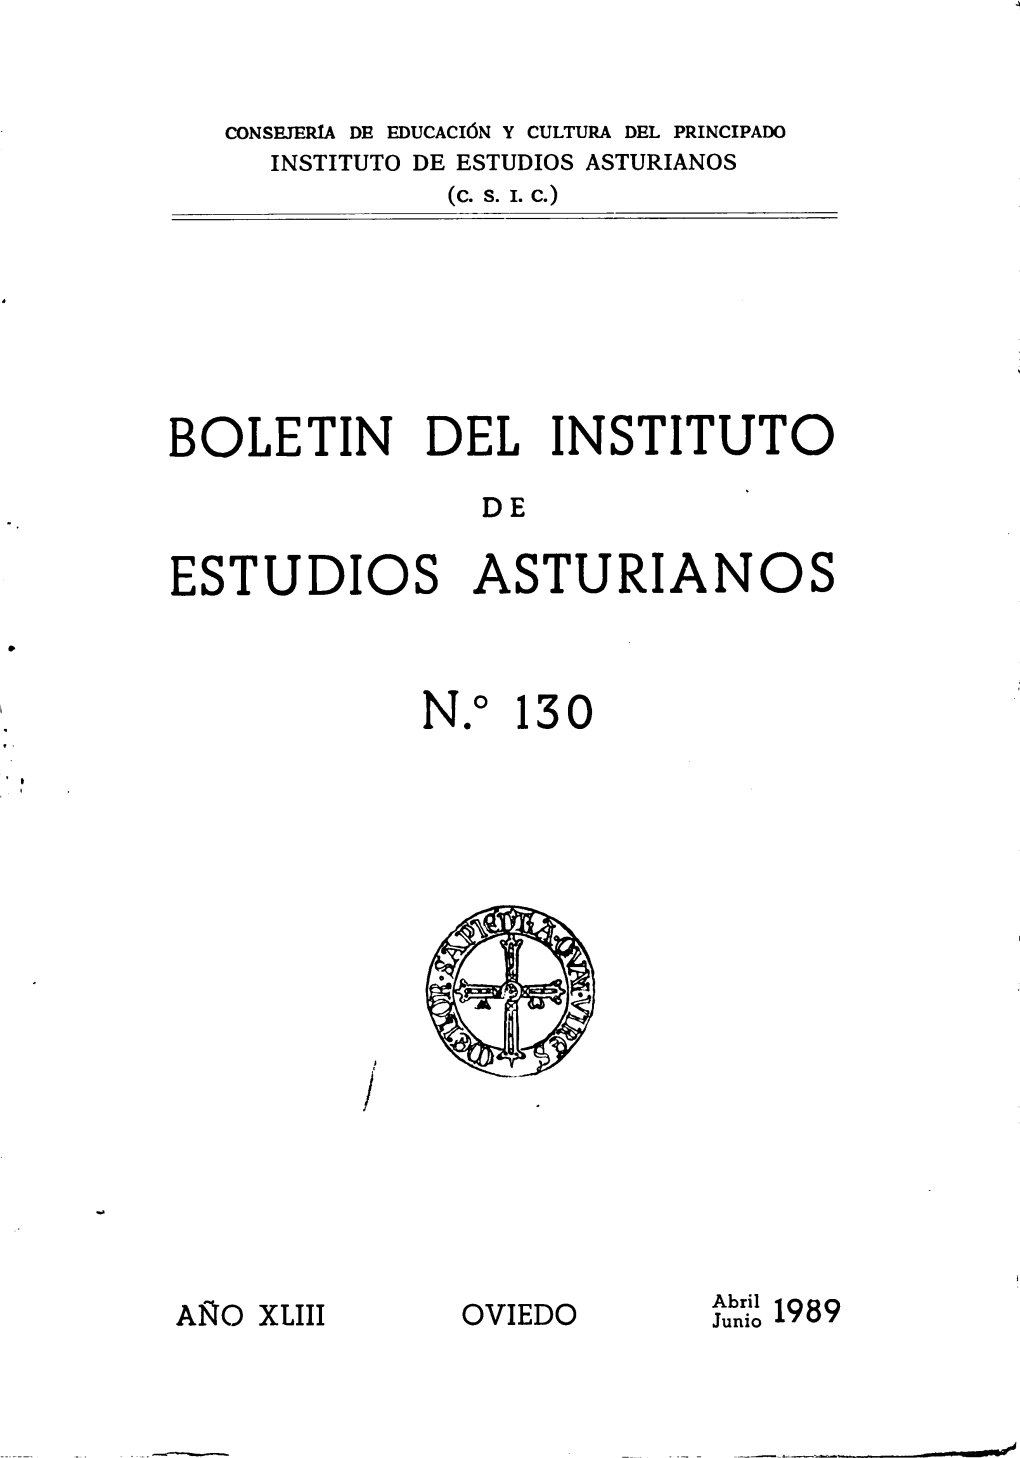 Estudios Asturianos N.°